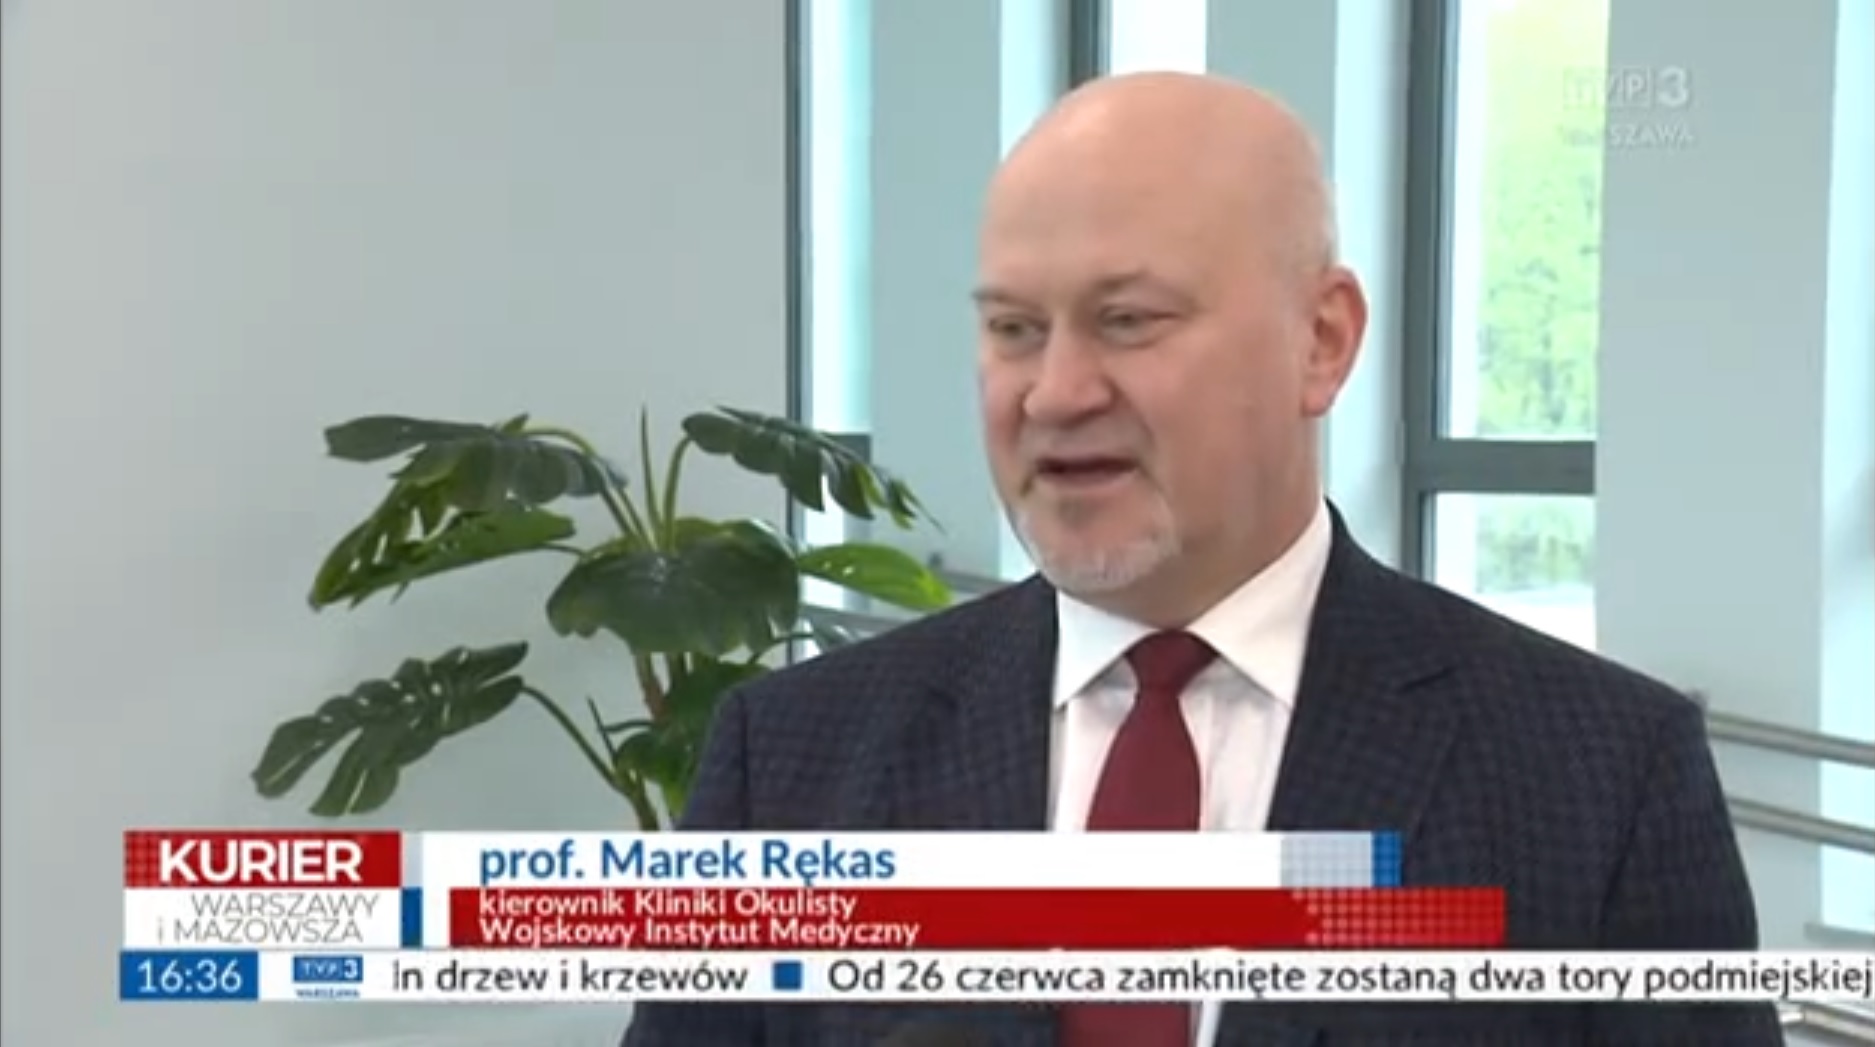 Zrzut ekranu z programu telewizyjnego Kurier Warszawy i Mazowsza